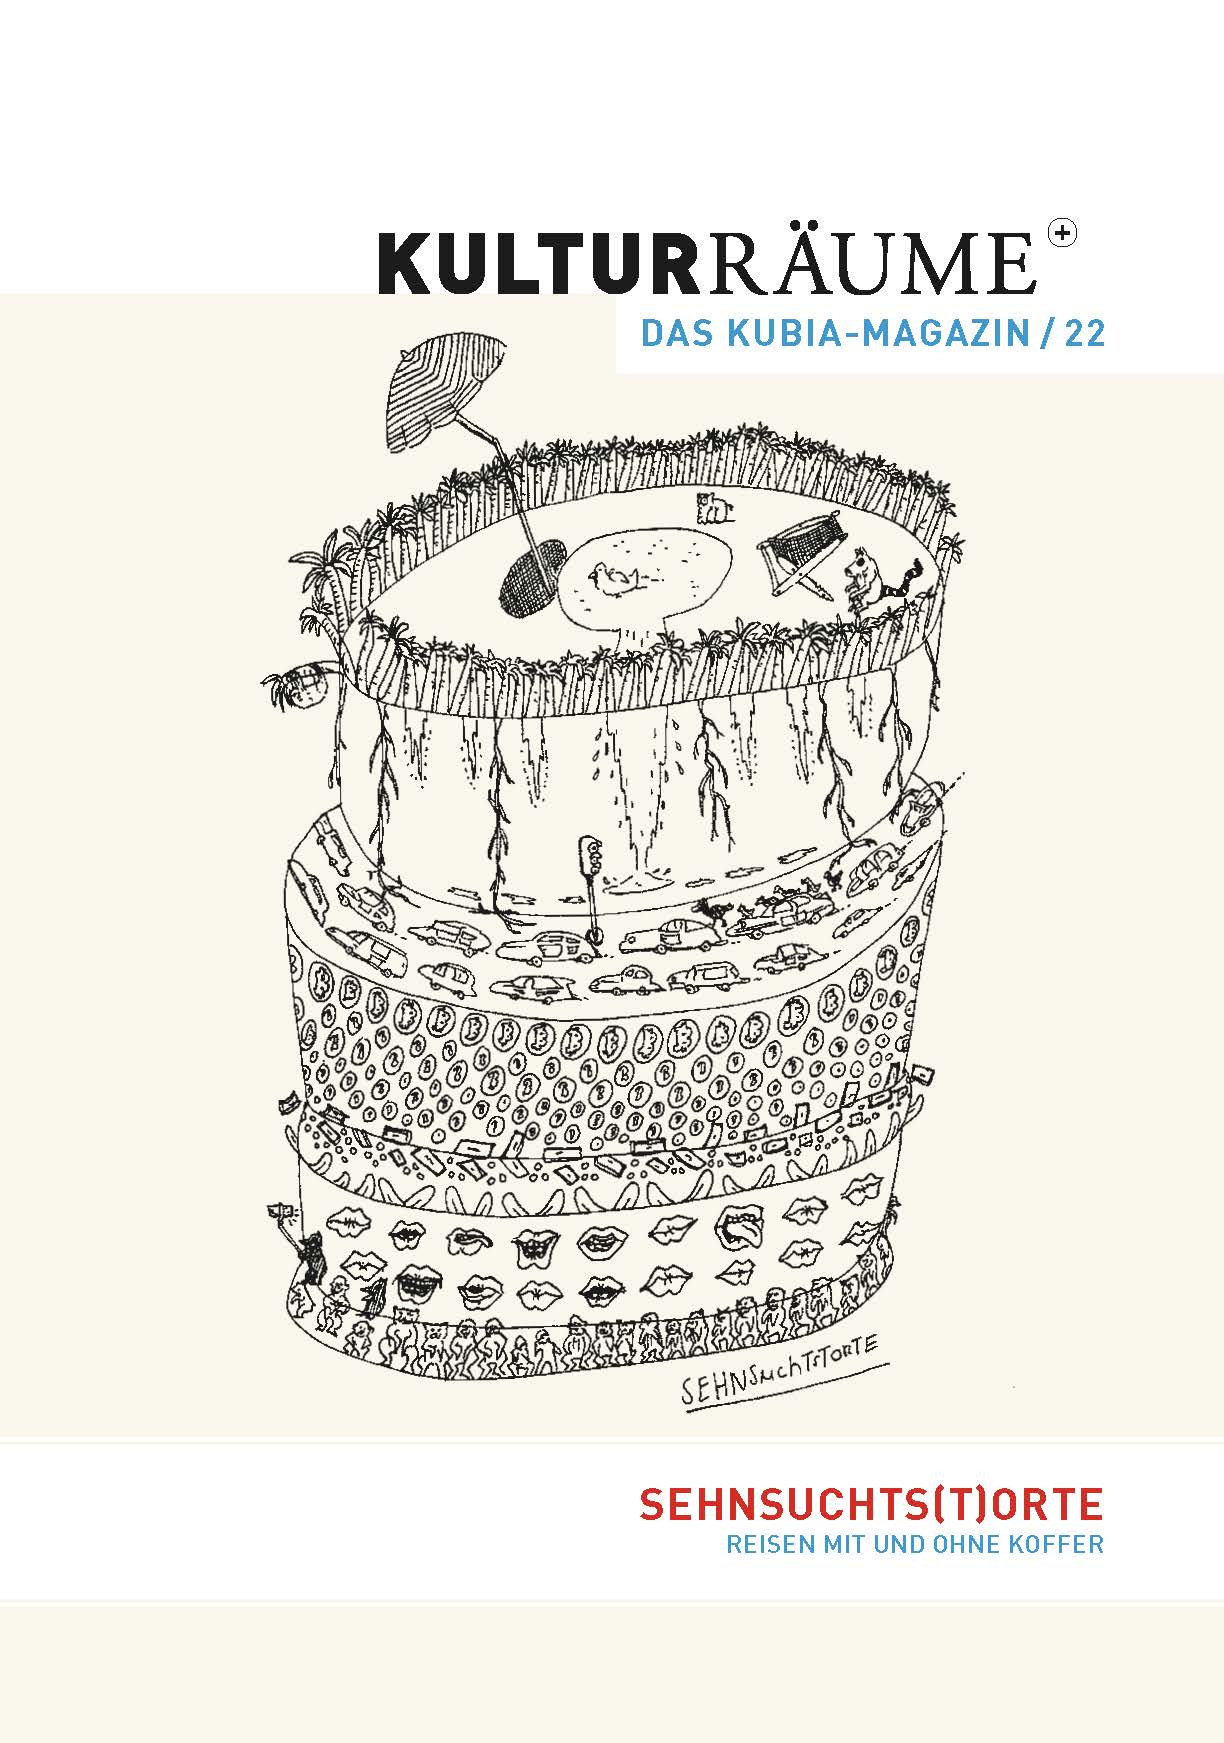 Cover Kulturräume+ 22/2022. Zeichnung von Merten Fellmann "Sehnsuchtstorte". Mehrstöckige Torte, auf jeder Etage sind Sehnsüchte zu sehen: Zuwendung (Münder), Wohlstand (Münzen), Reisen (Autos im Stau) und ganz oben ein Liegestuhl mit Sonnenschirm am Wasser unter Palmen